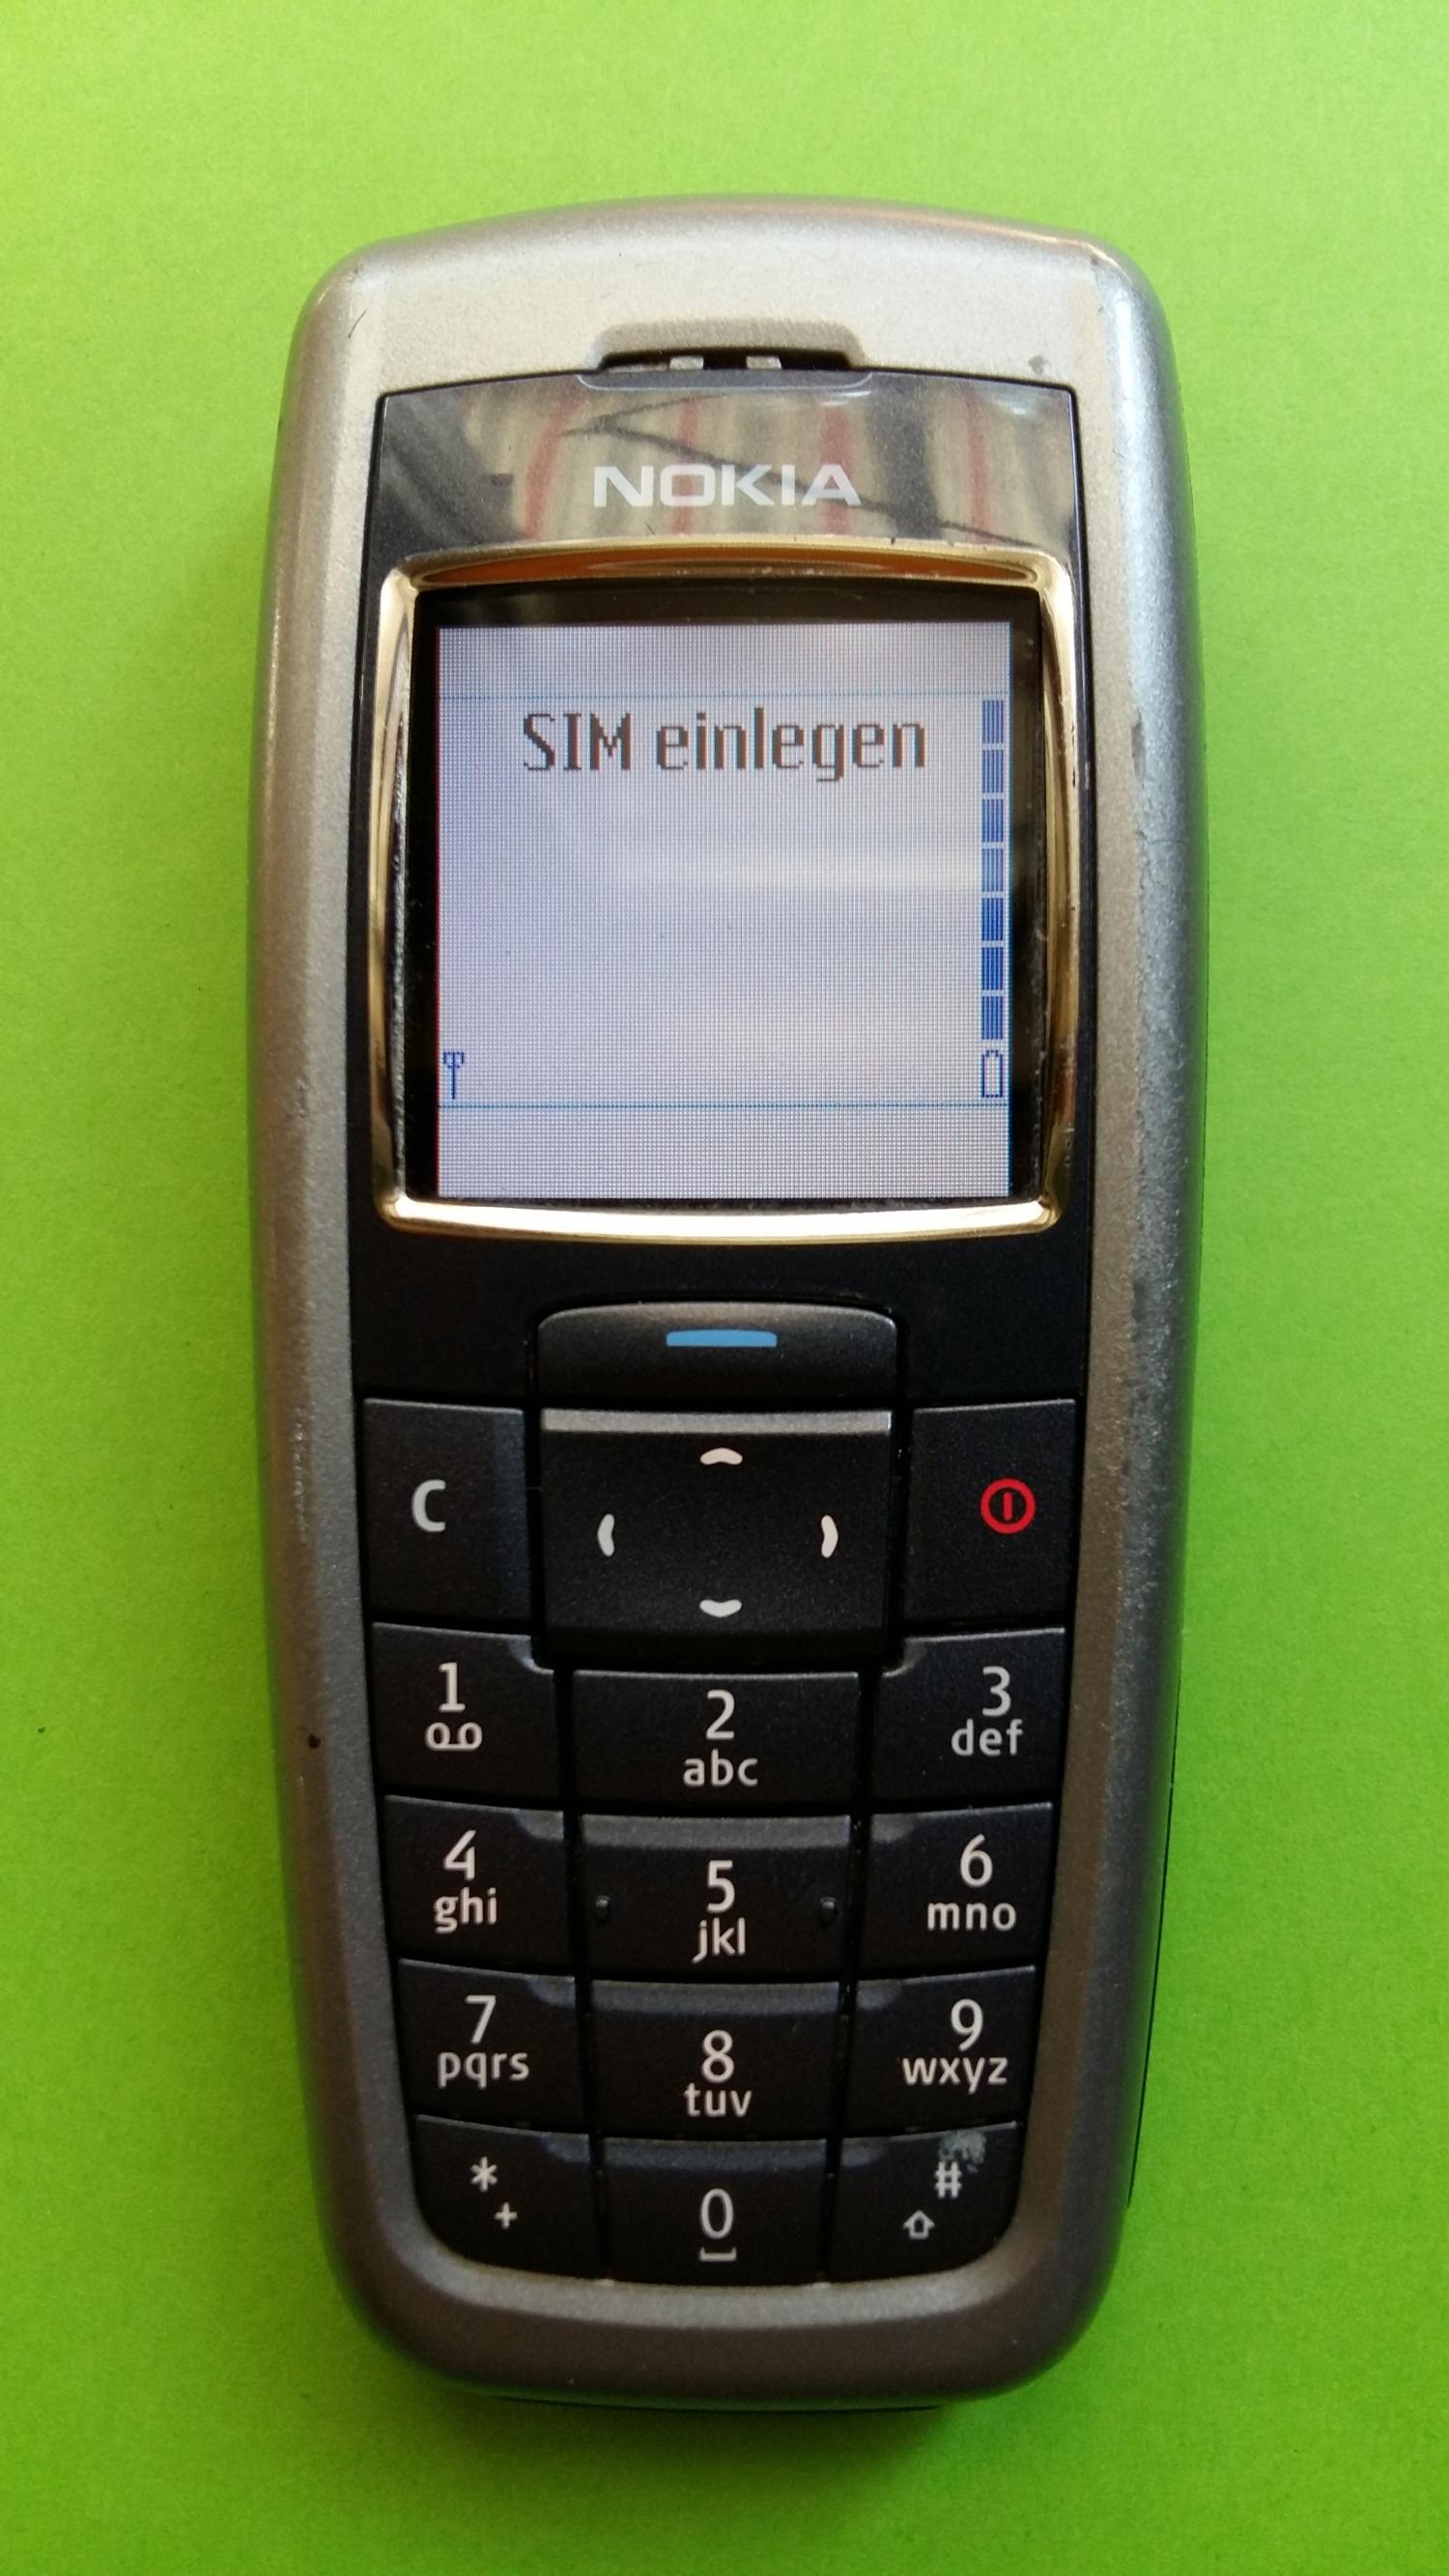 image-7330032-Nokia 2600 (1)1.jpg